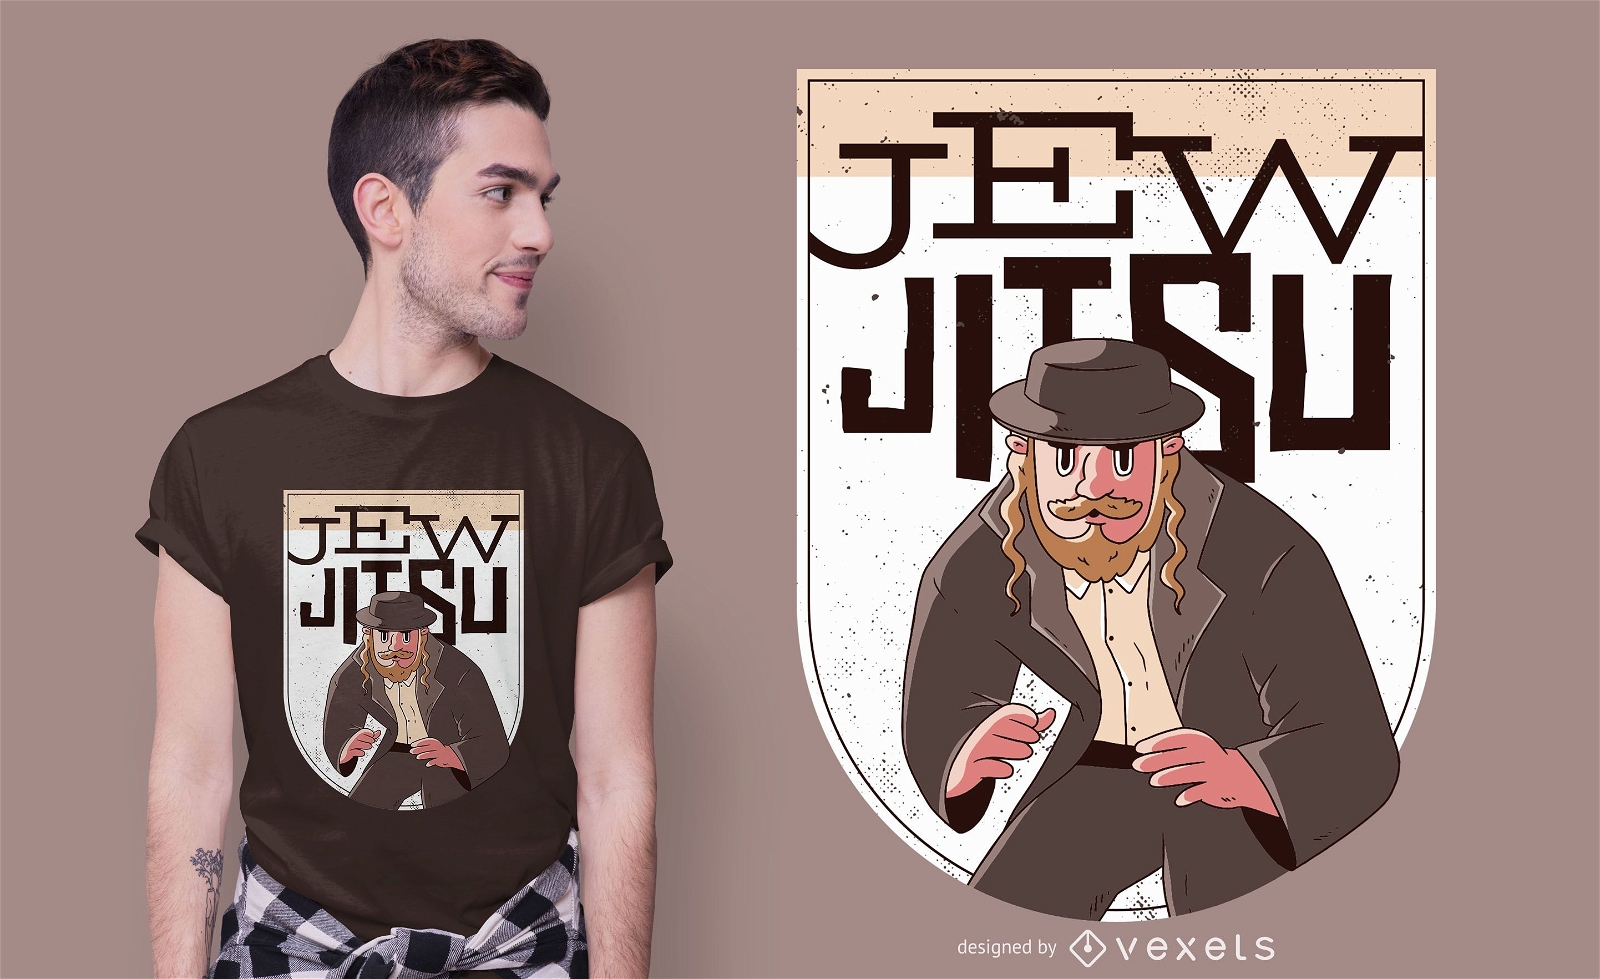 Diseño de camiseta judío jitsu